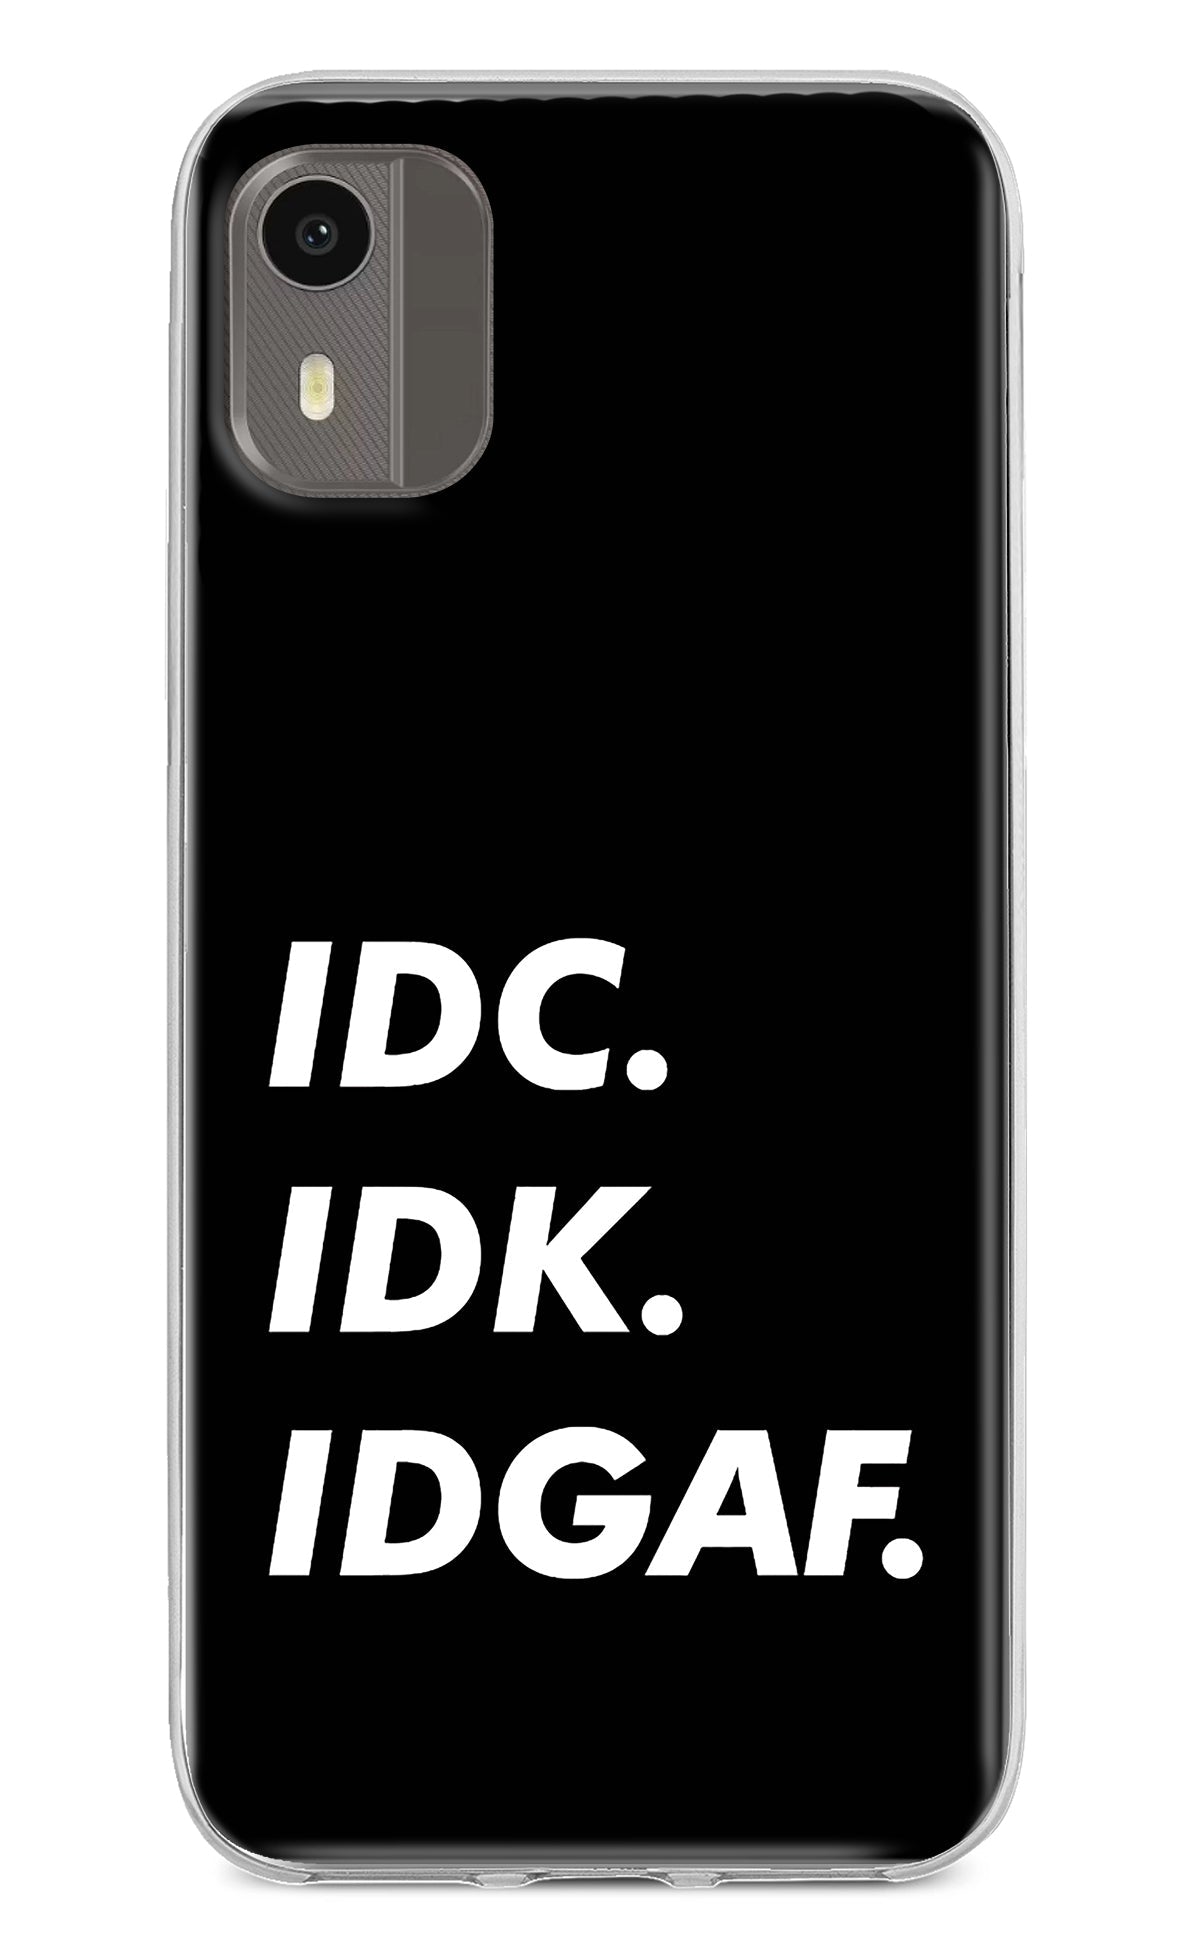 Idc Idk Idgaf Nokia C12/C12 Pro Back Cover